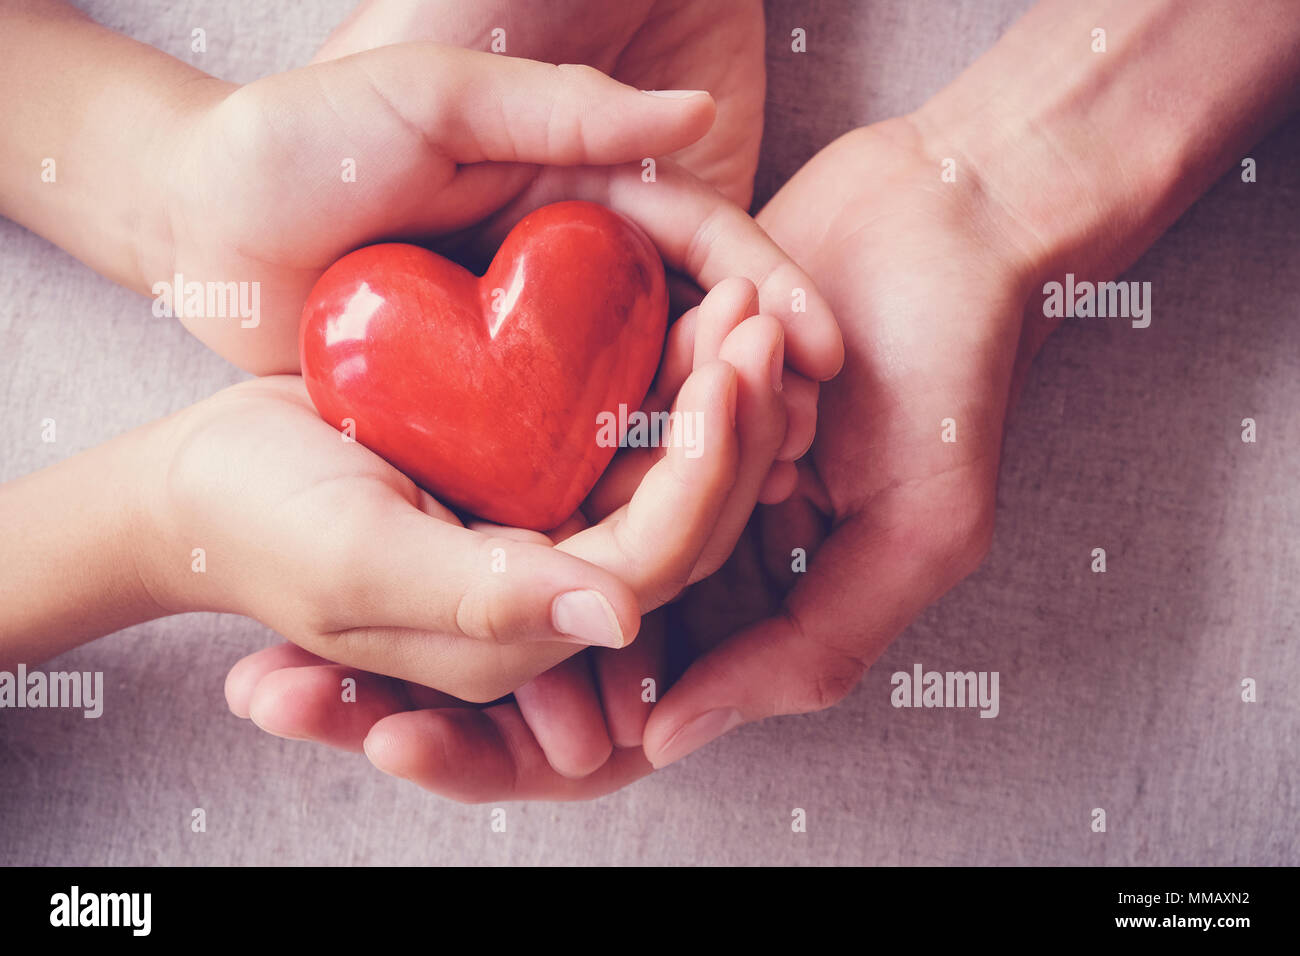 Erwachsener und Kind Hände holiding rotes Herz, Gesundheit, Liebe, spenden, Versicherungen und Familie Konzept Stockfoto